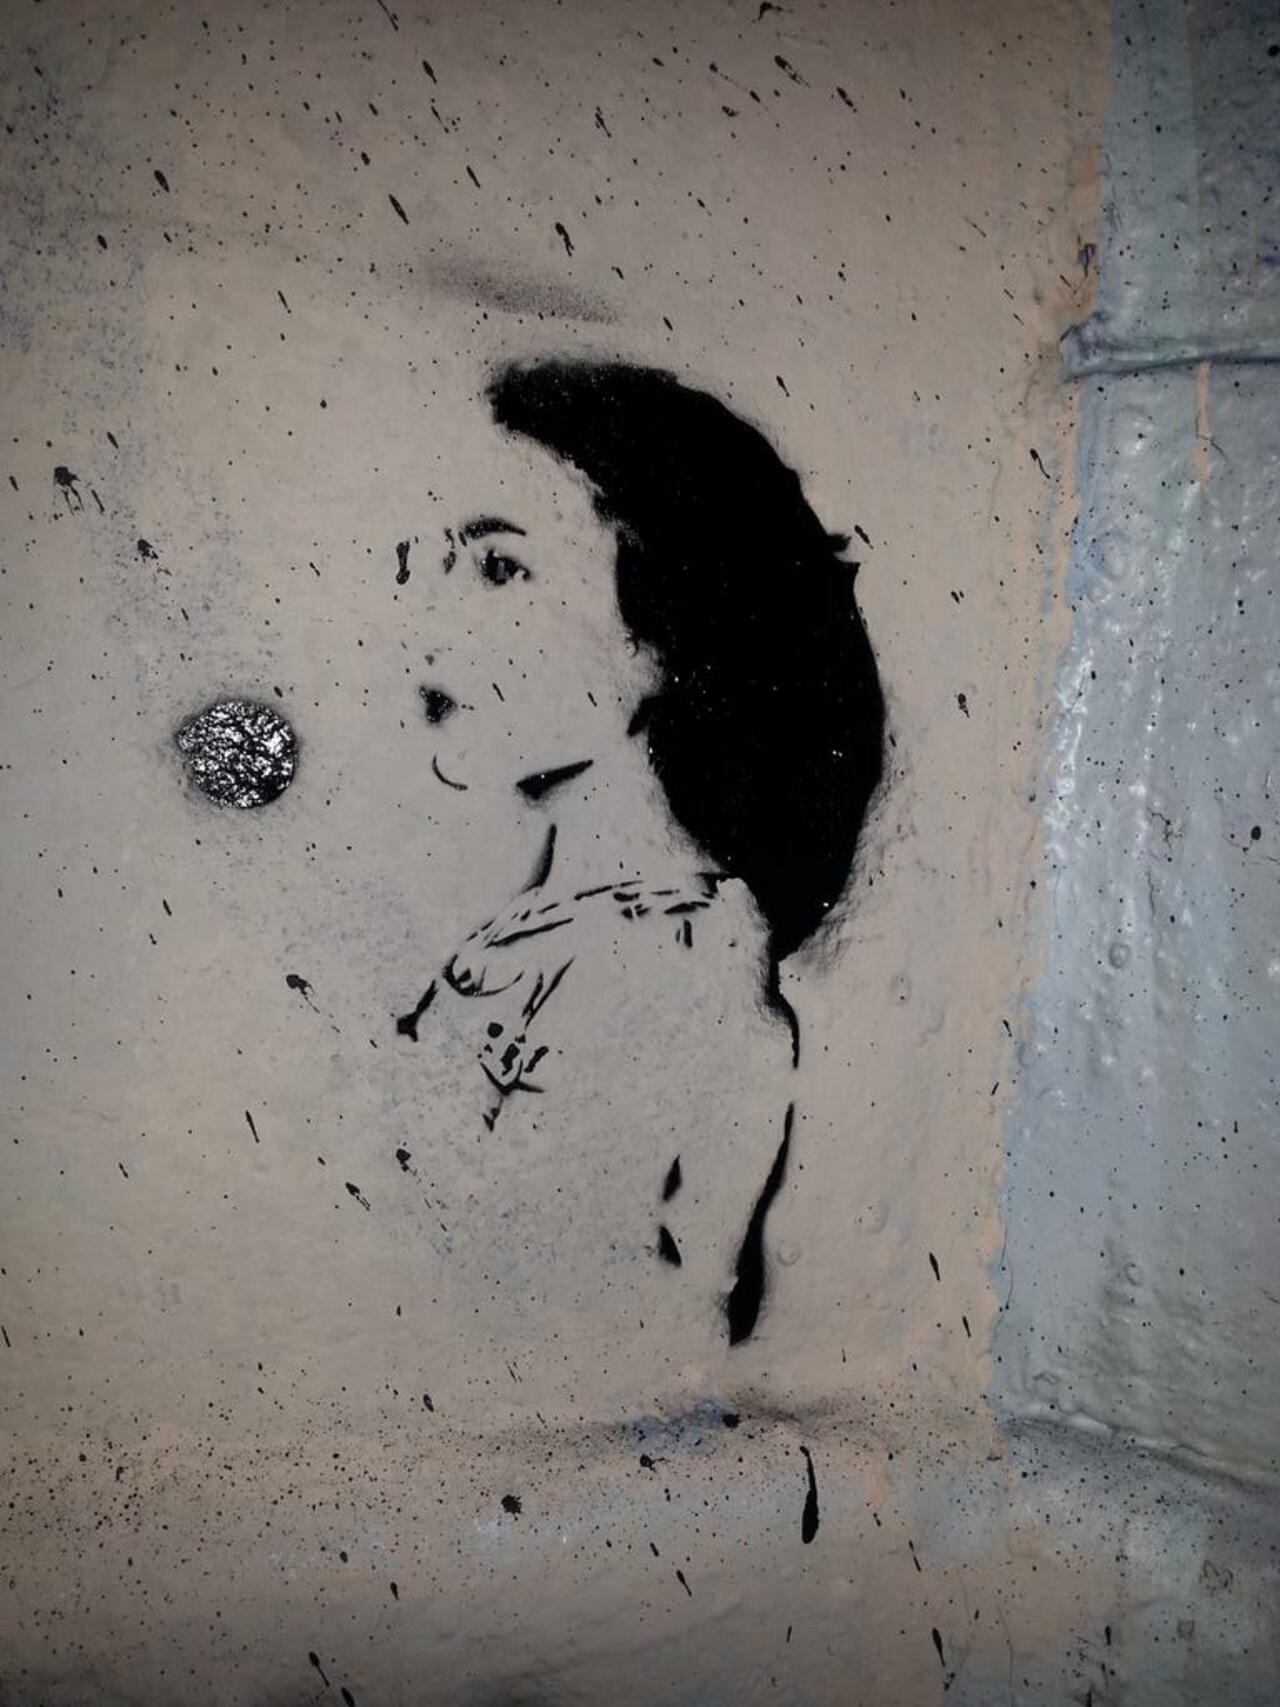 RT @SprayChilled: #streetart #vienna #wien #stencil #graffiti #spraychilled #mural #masoeurcenttetes https://t.co/NIRDbEX8xK